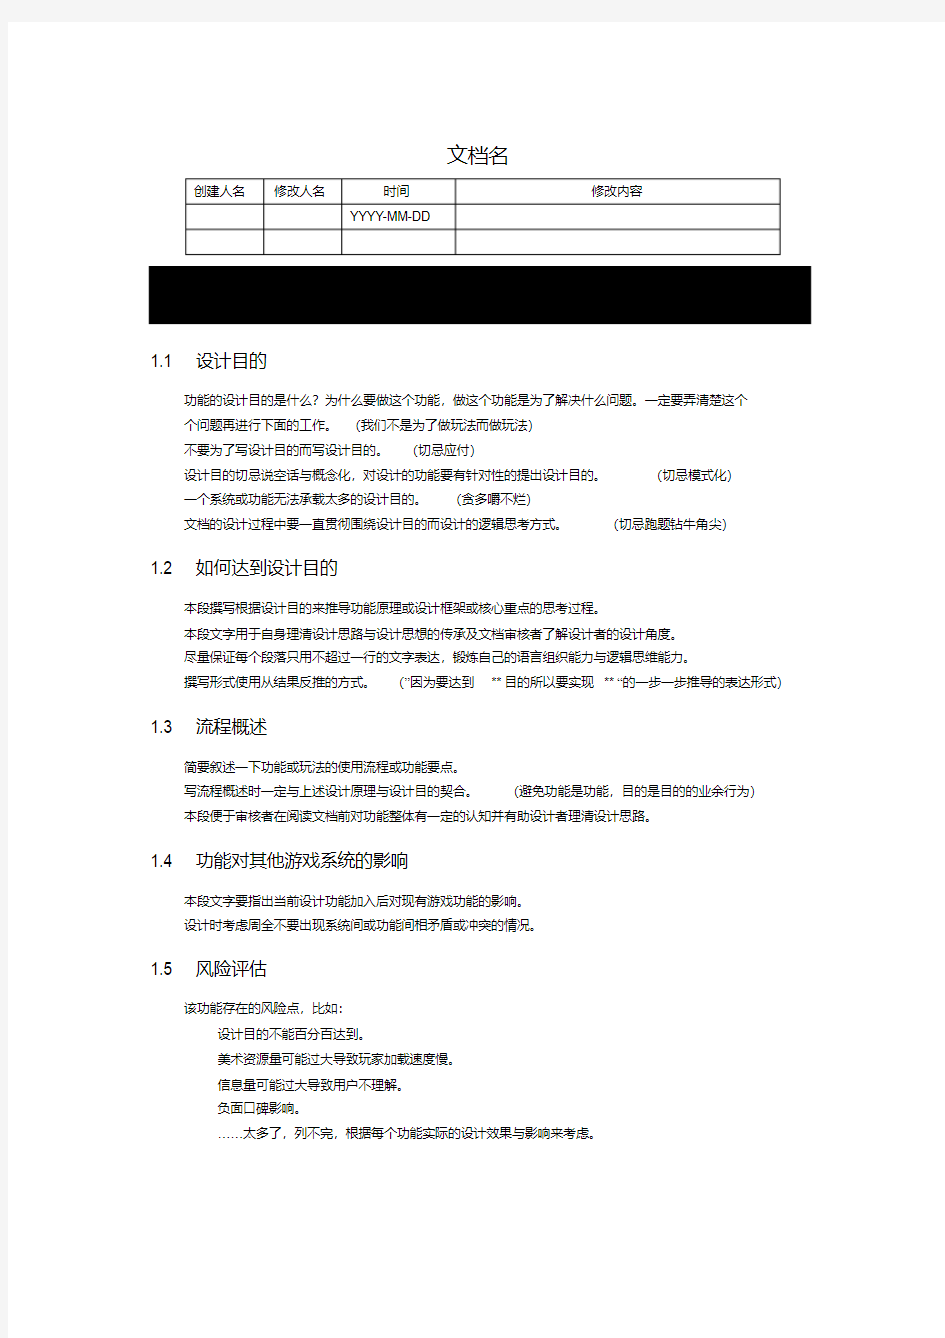 新版游戏策划文档模板-新版.pdf